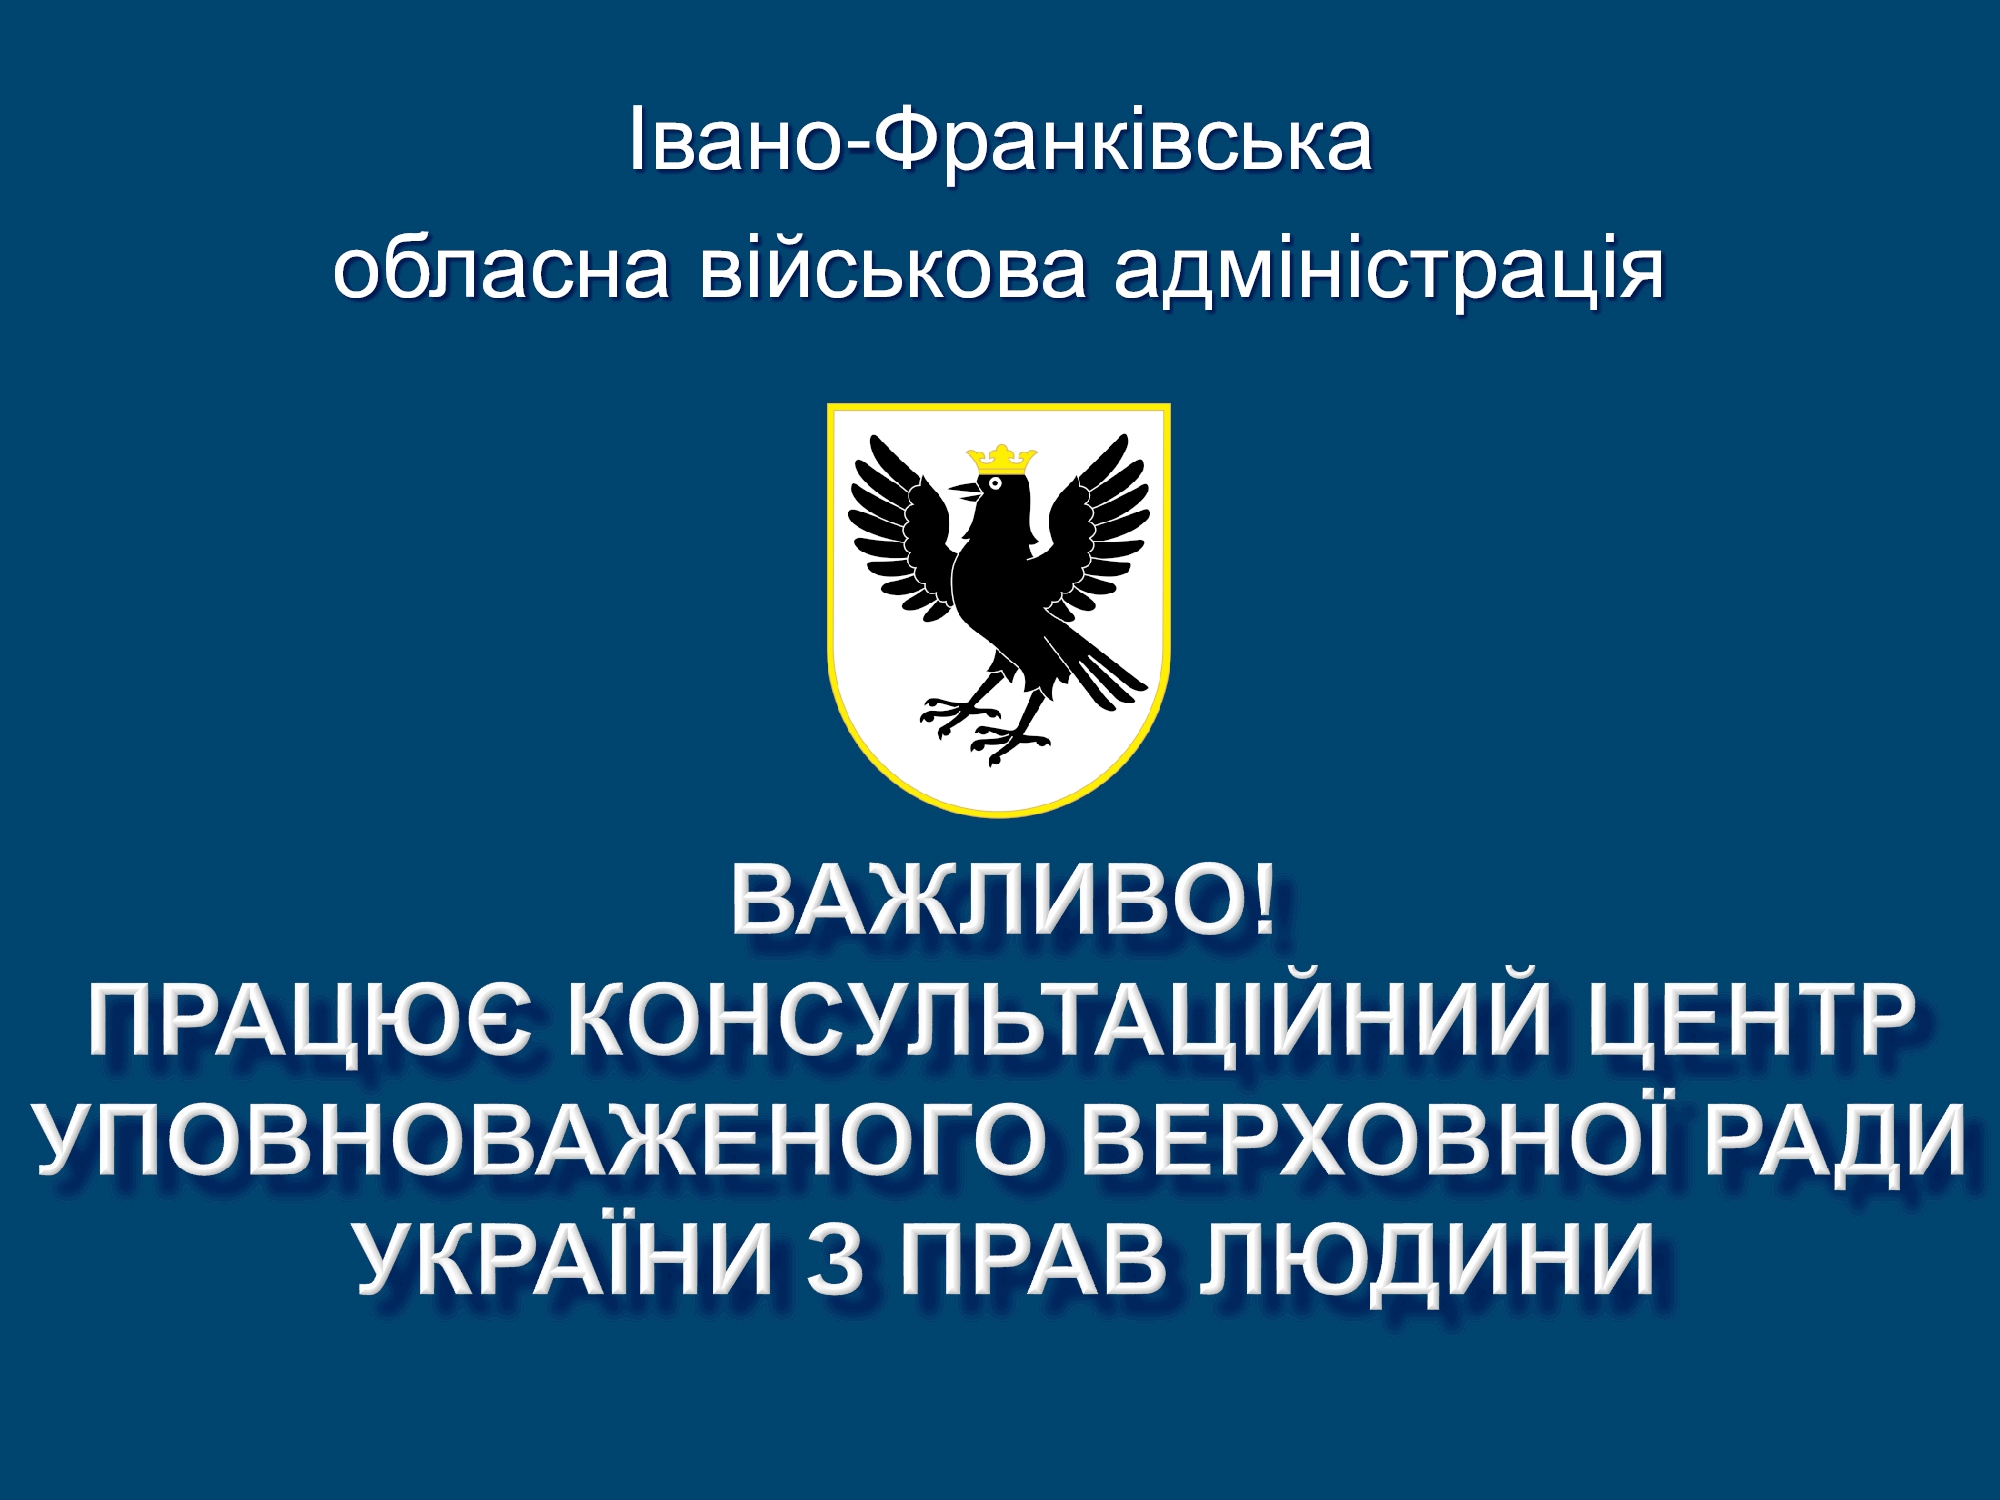 Консультаційний центр надає підтримку громадянам України у режимі онлайн та офлайн щодо: